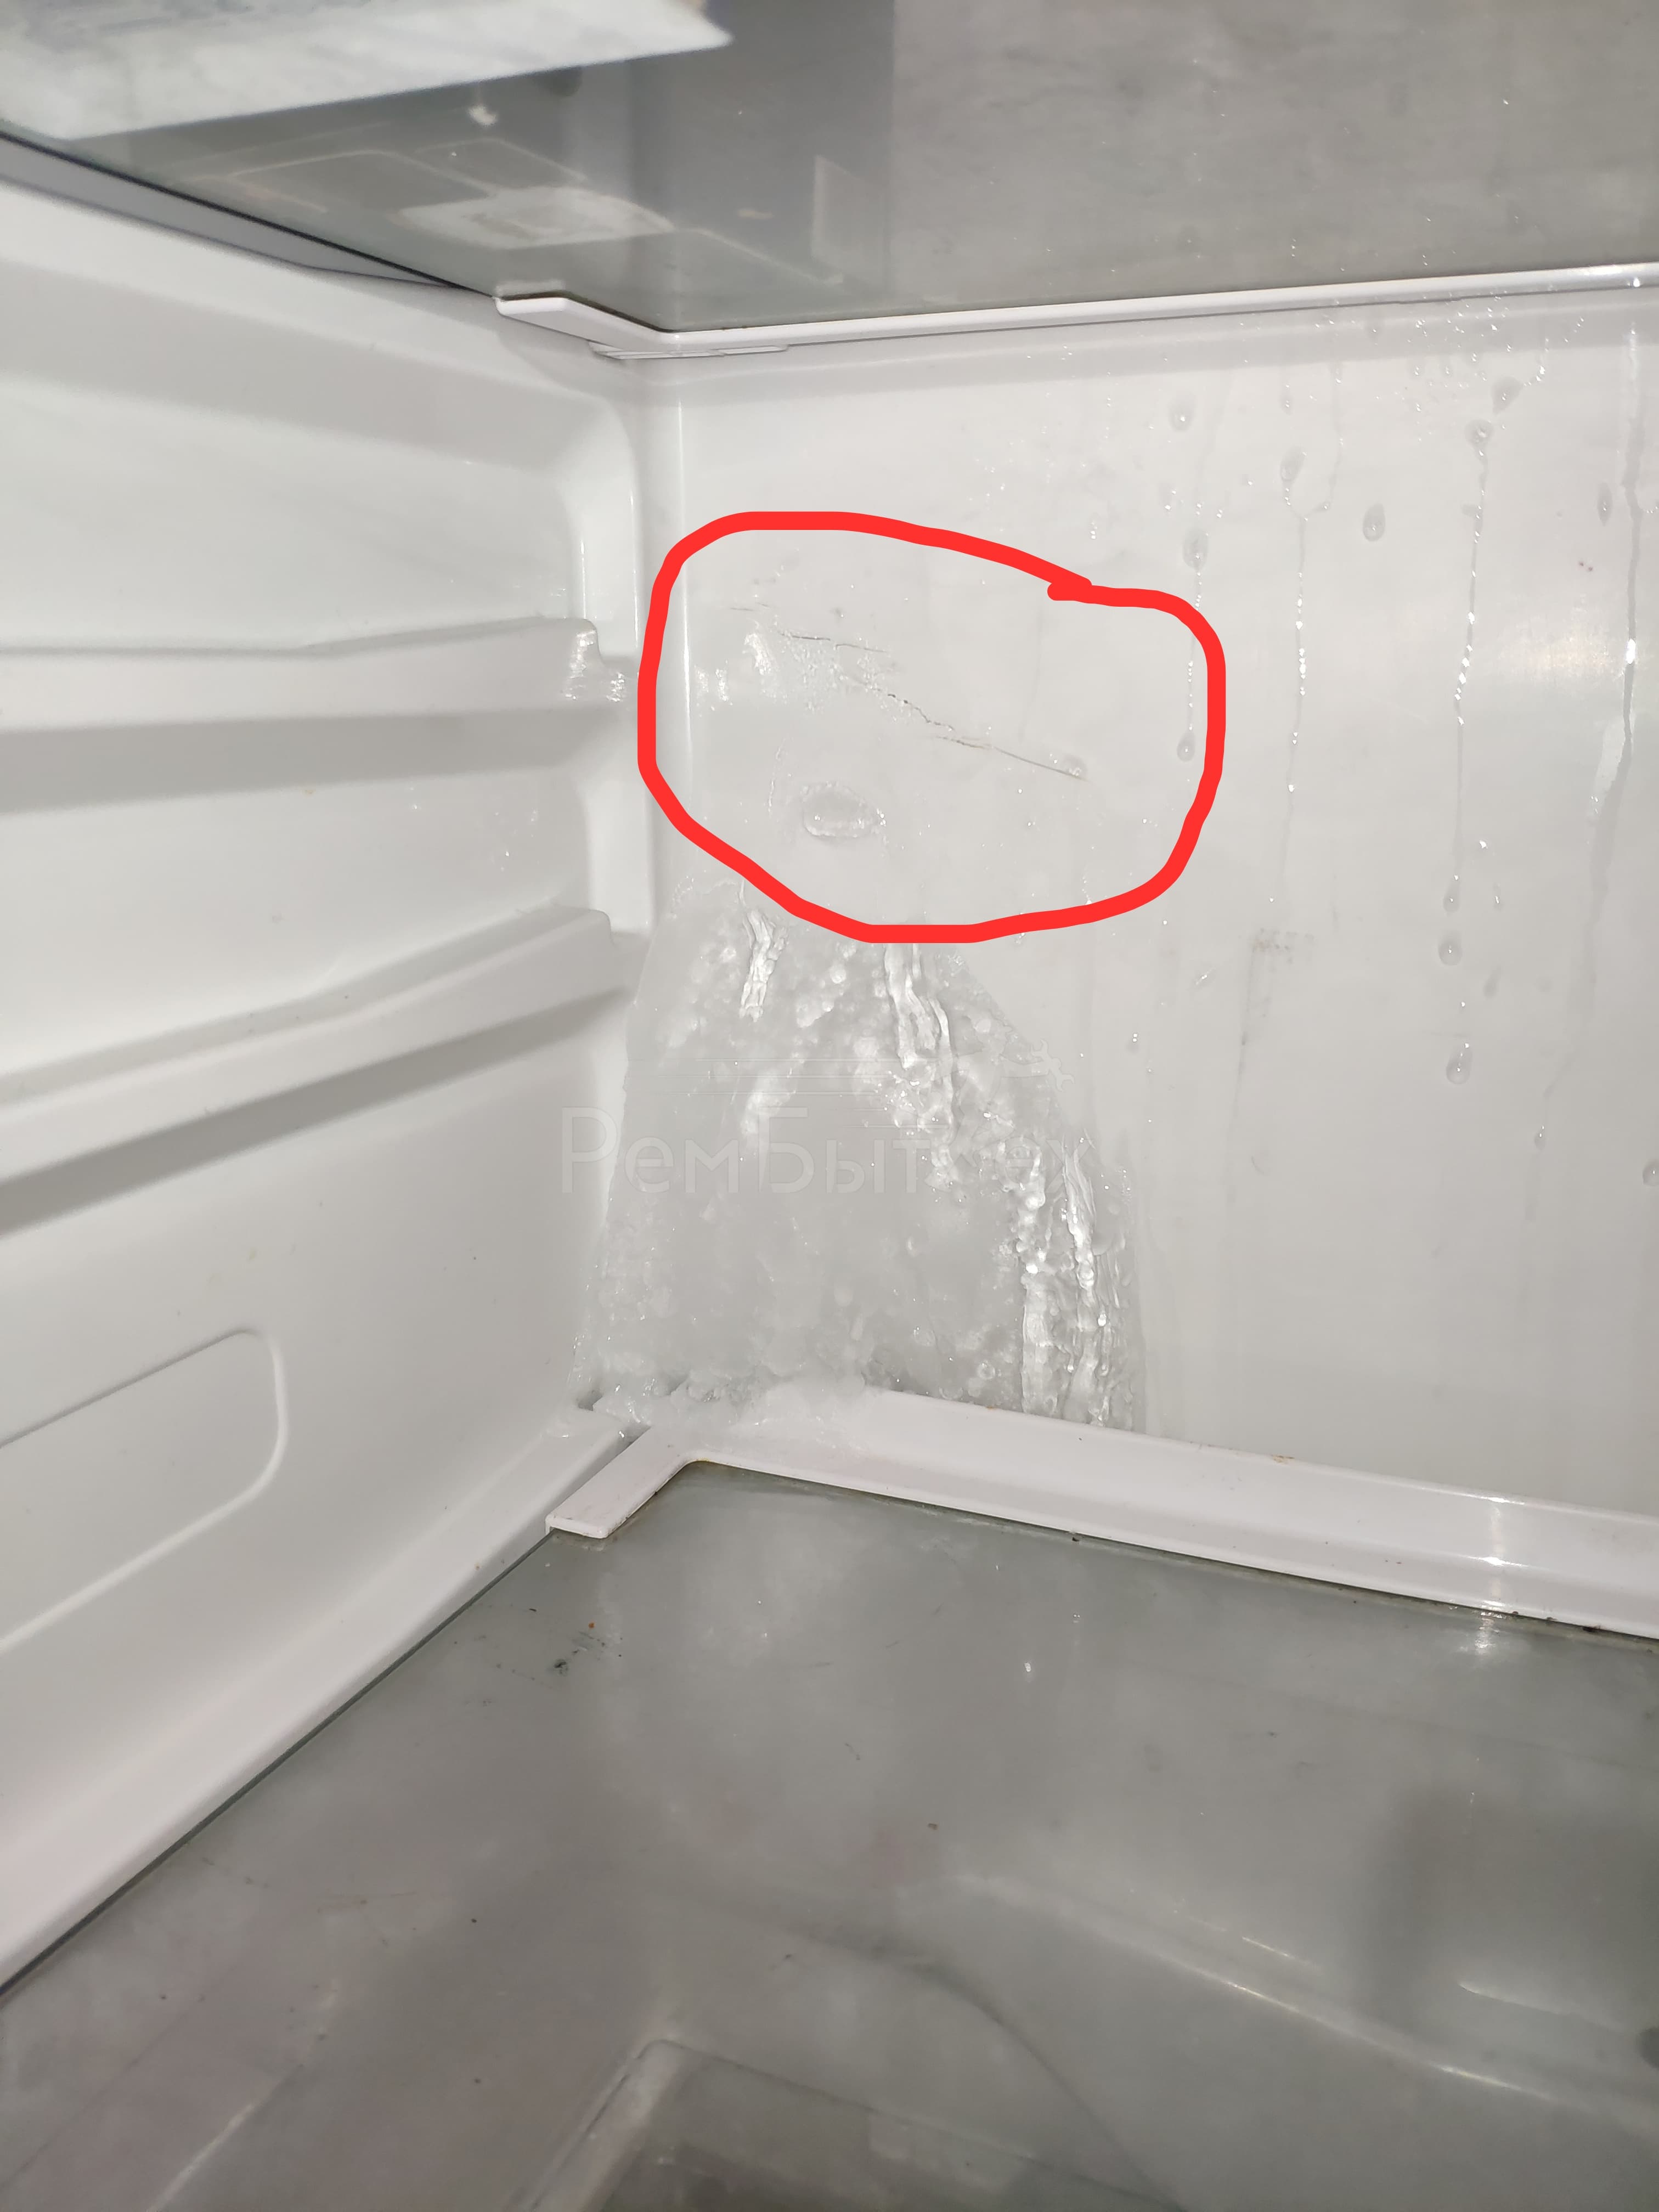 Холодильнике образуется вода. Холодильник БЕКО внутри холодильная камера. Холодильник самсунг внутри холодильной камеры. Задняя стенка холодильника самсунг ноу Фрост. Холодильник Индезит морозилка намерзает лед.